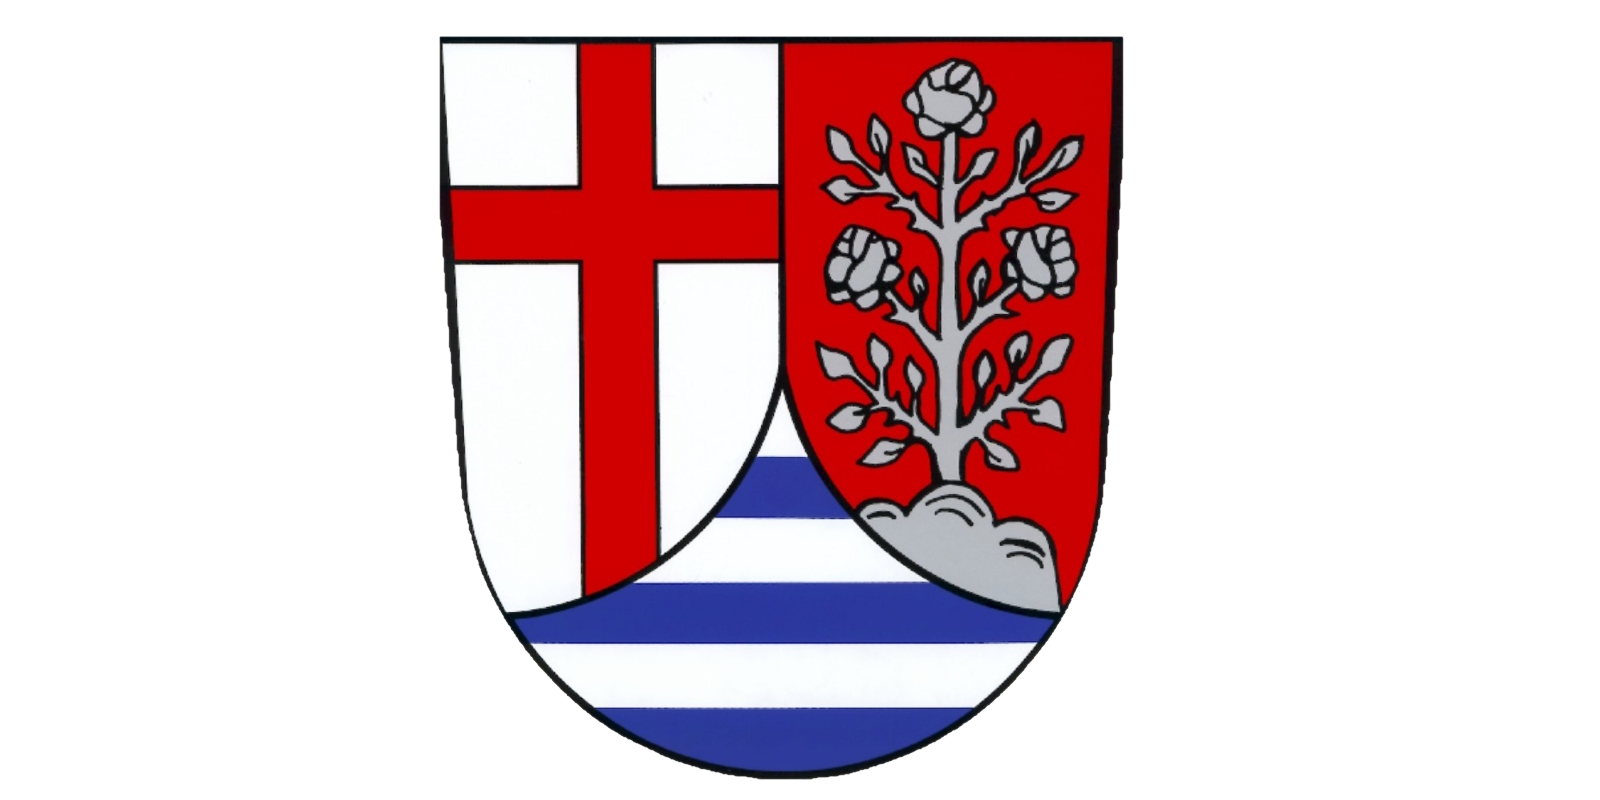 Wappen der Gemeinde Sinzing